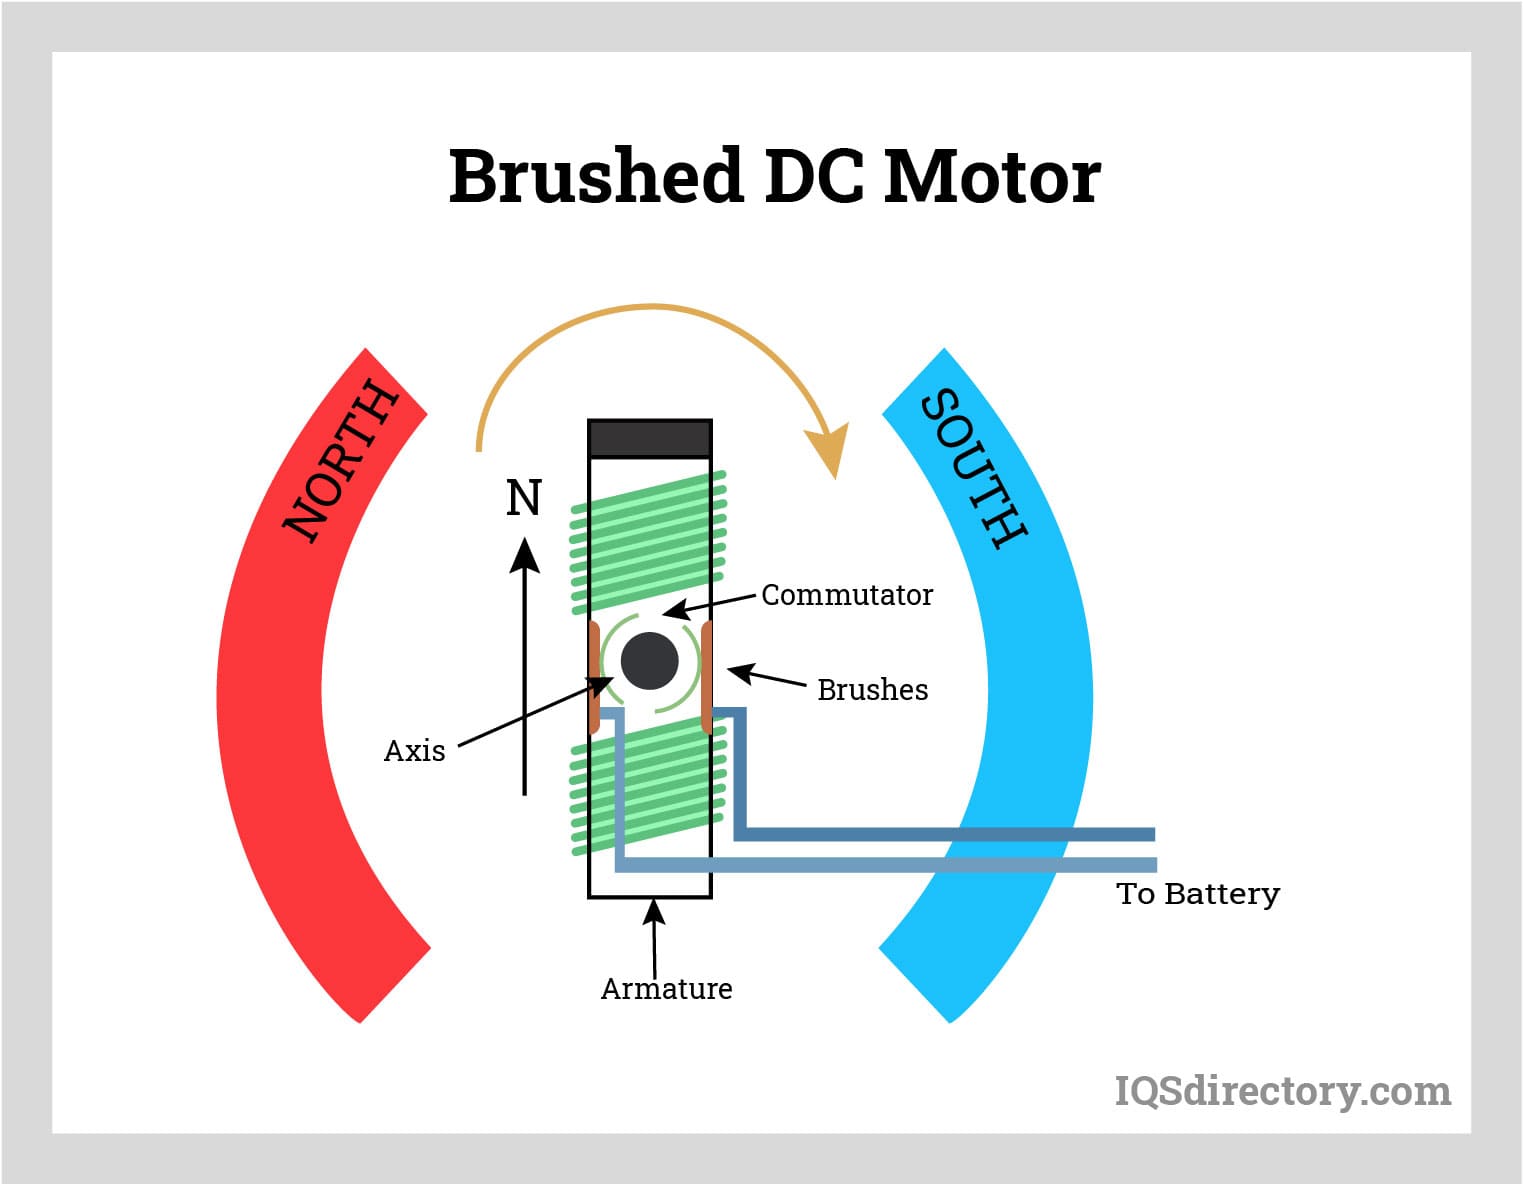 Brushed DC Motor